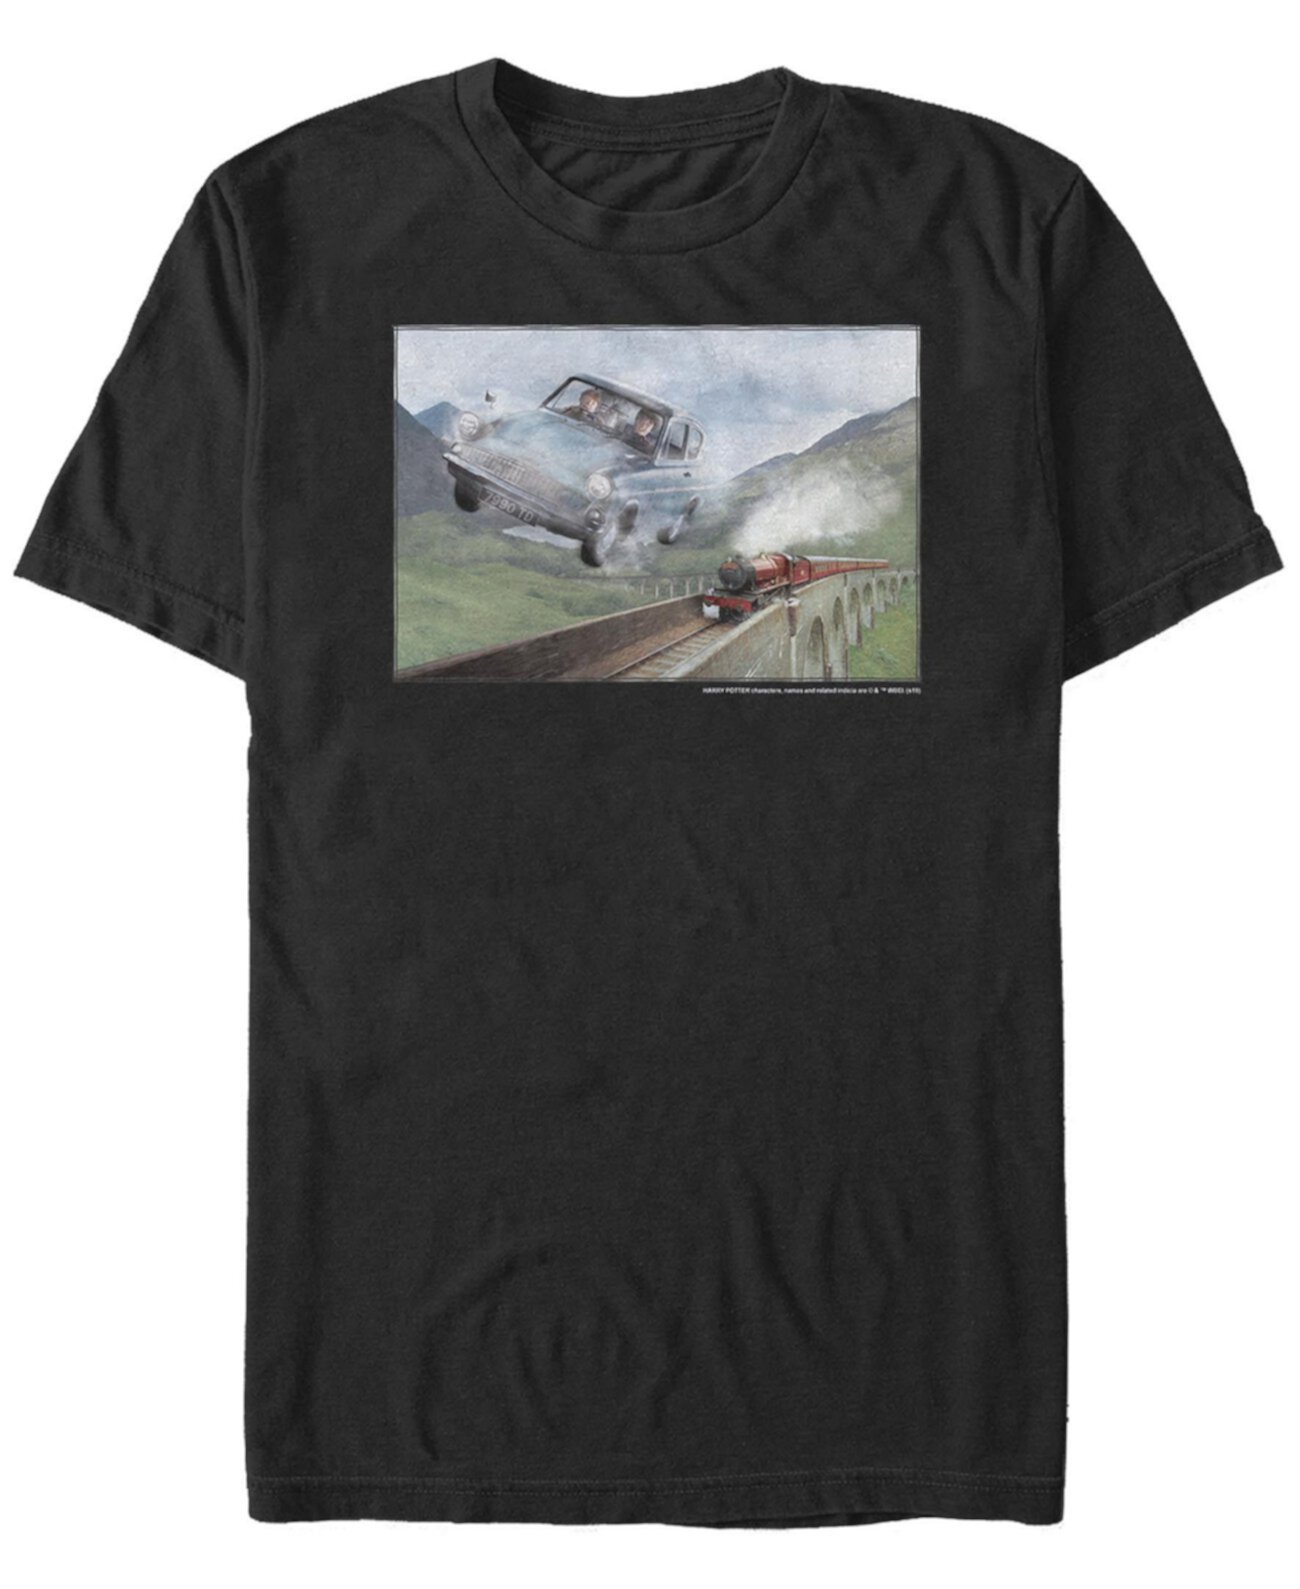 Мужская футболка с короткими рукавами и круглым вырезом Racing The Train FIFTH SUN